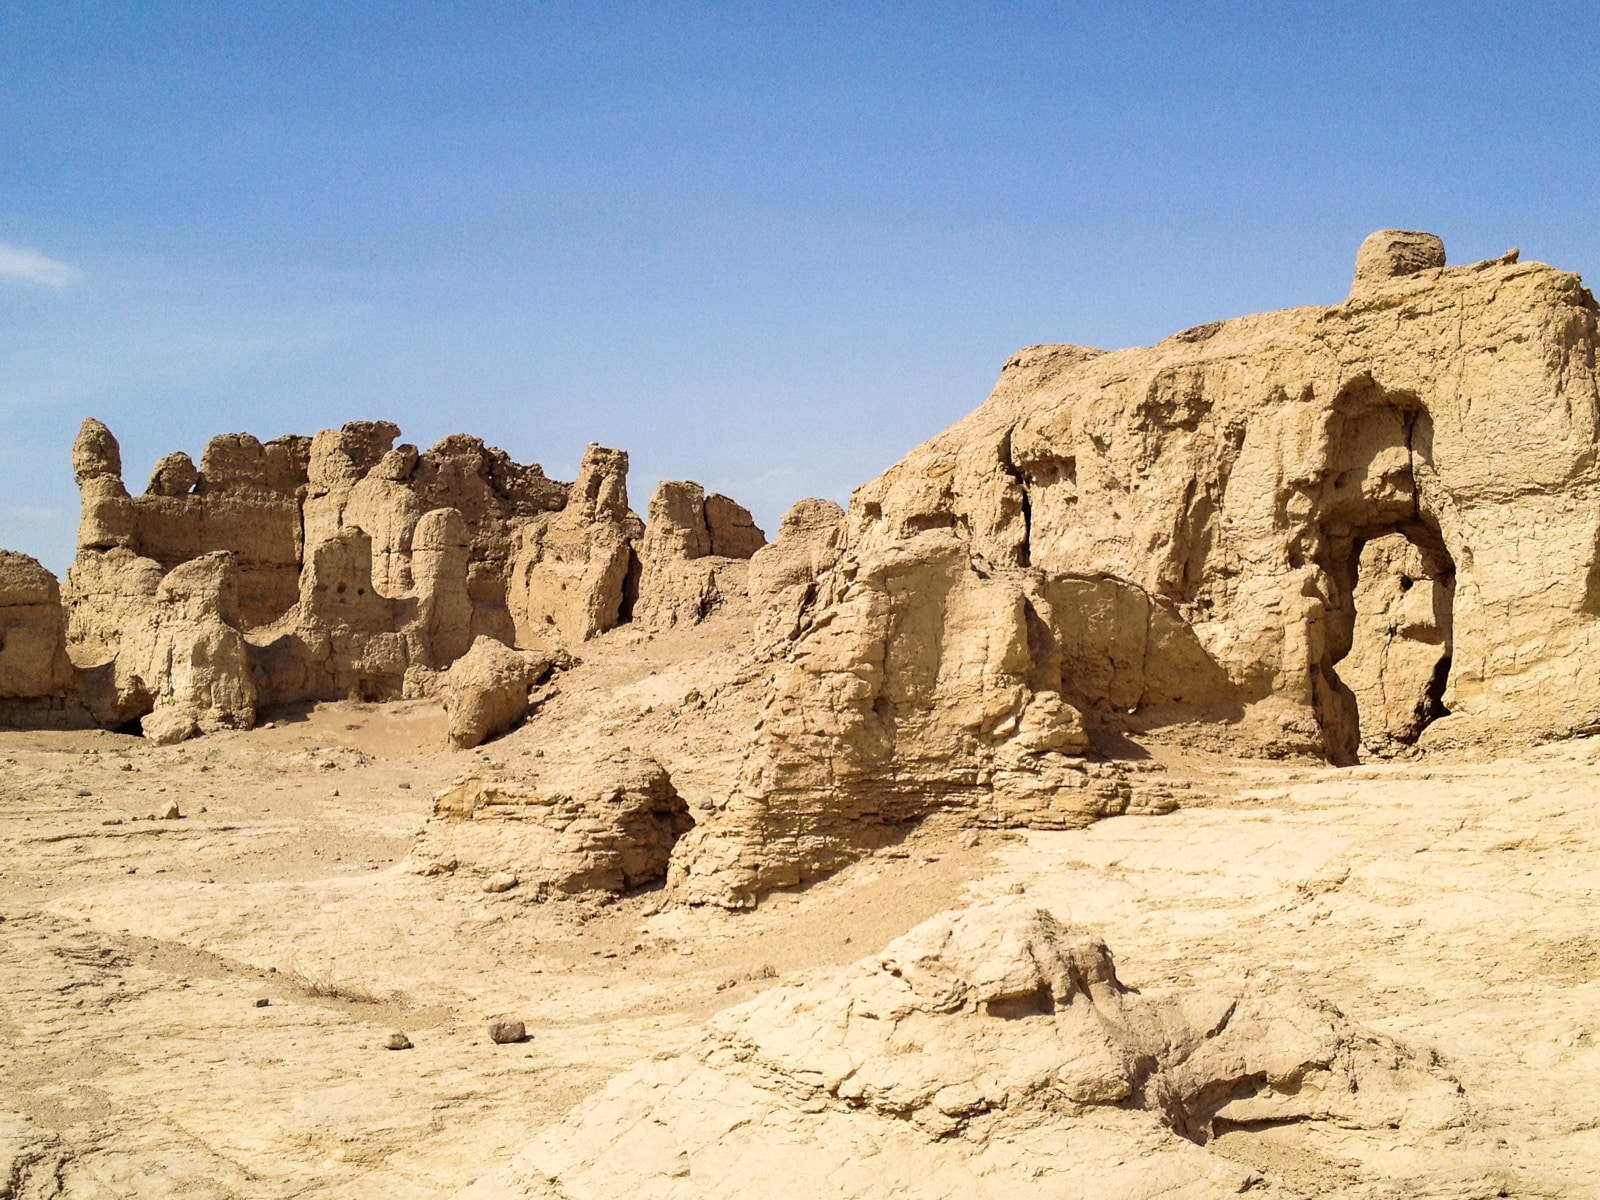 Remains of Jiaohe city near Turpan, Xinjiang, China